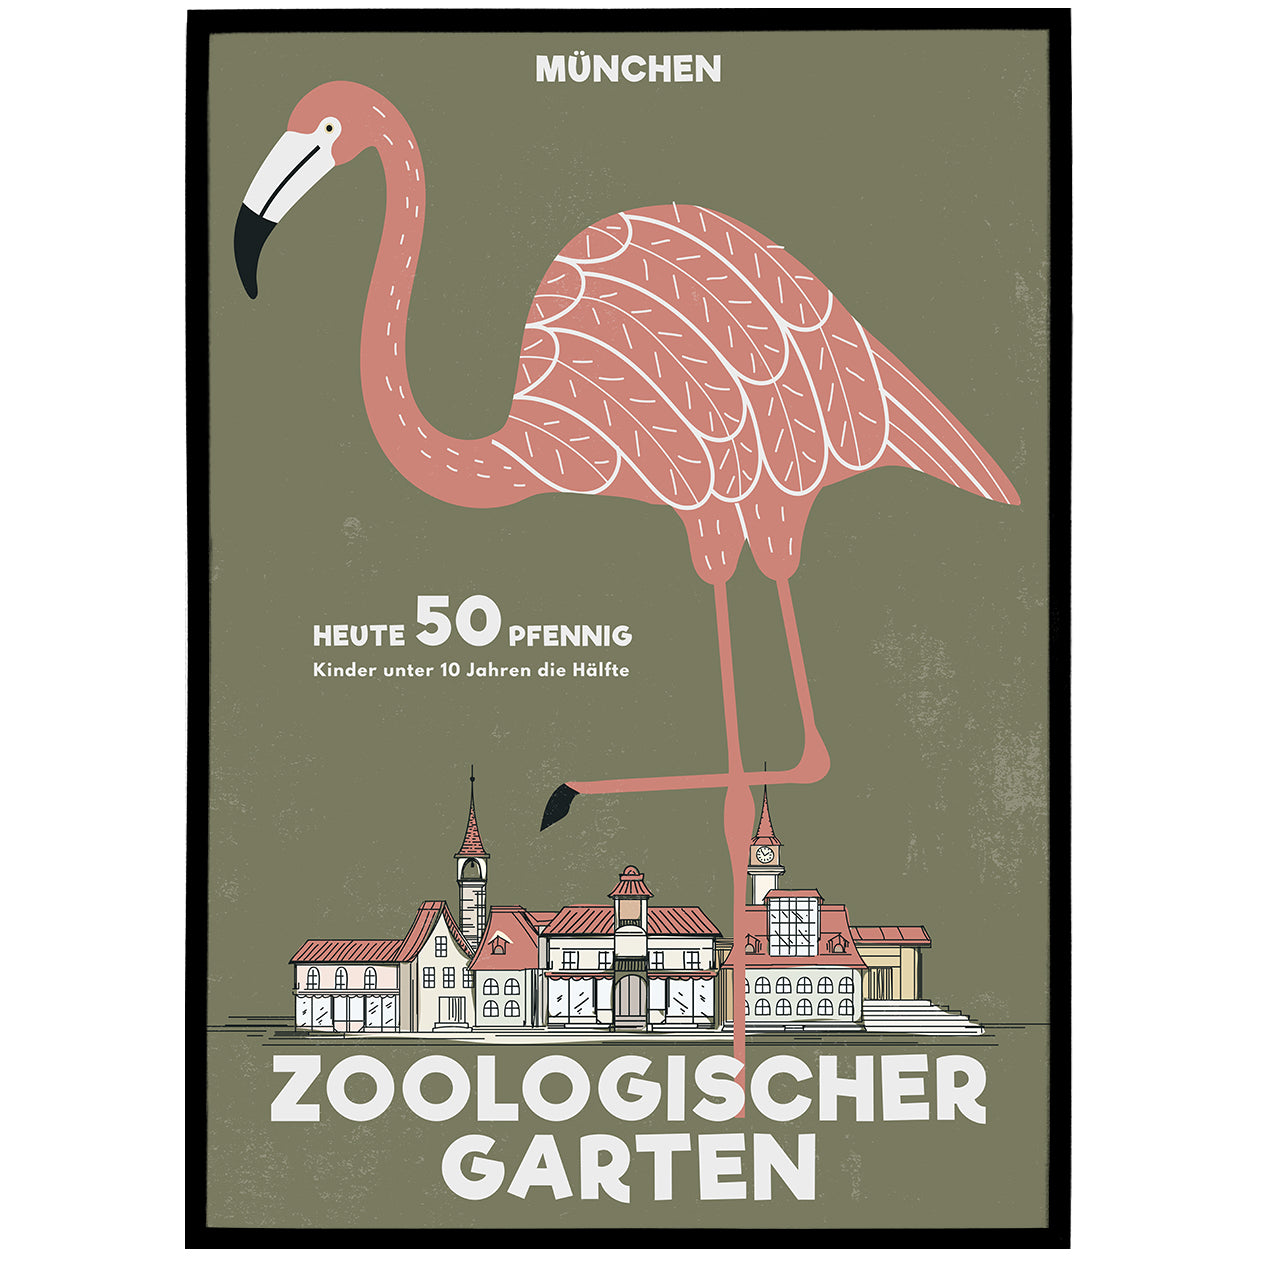 Zoologischer Garten Poster